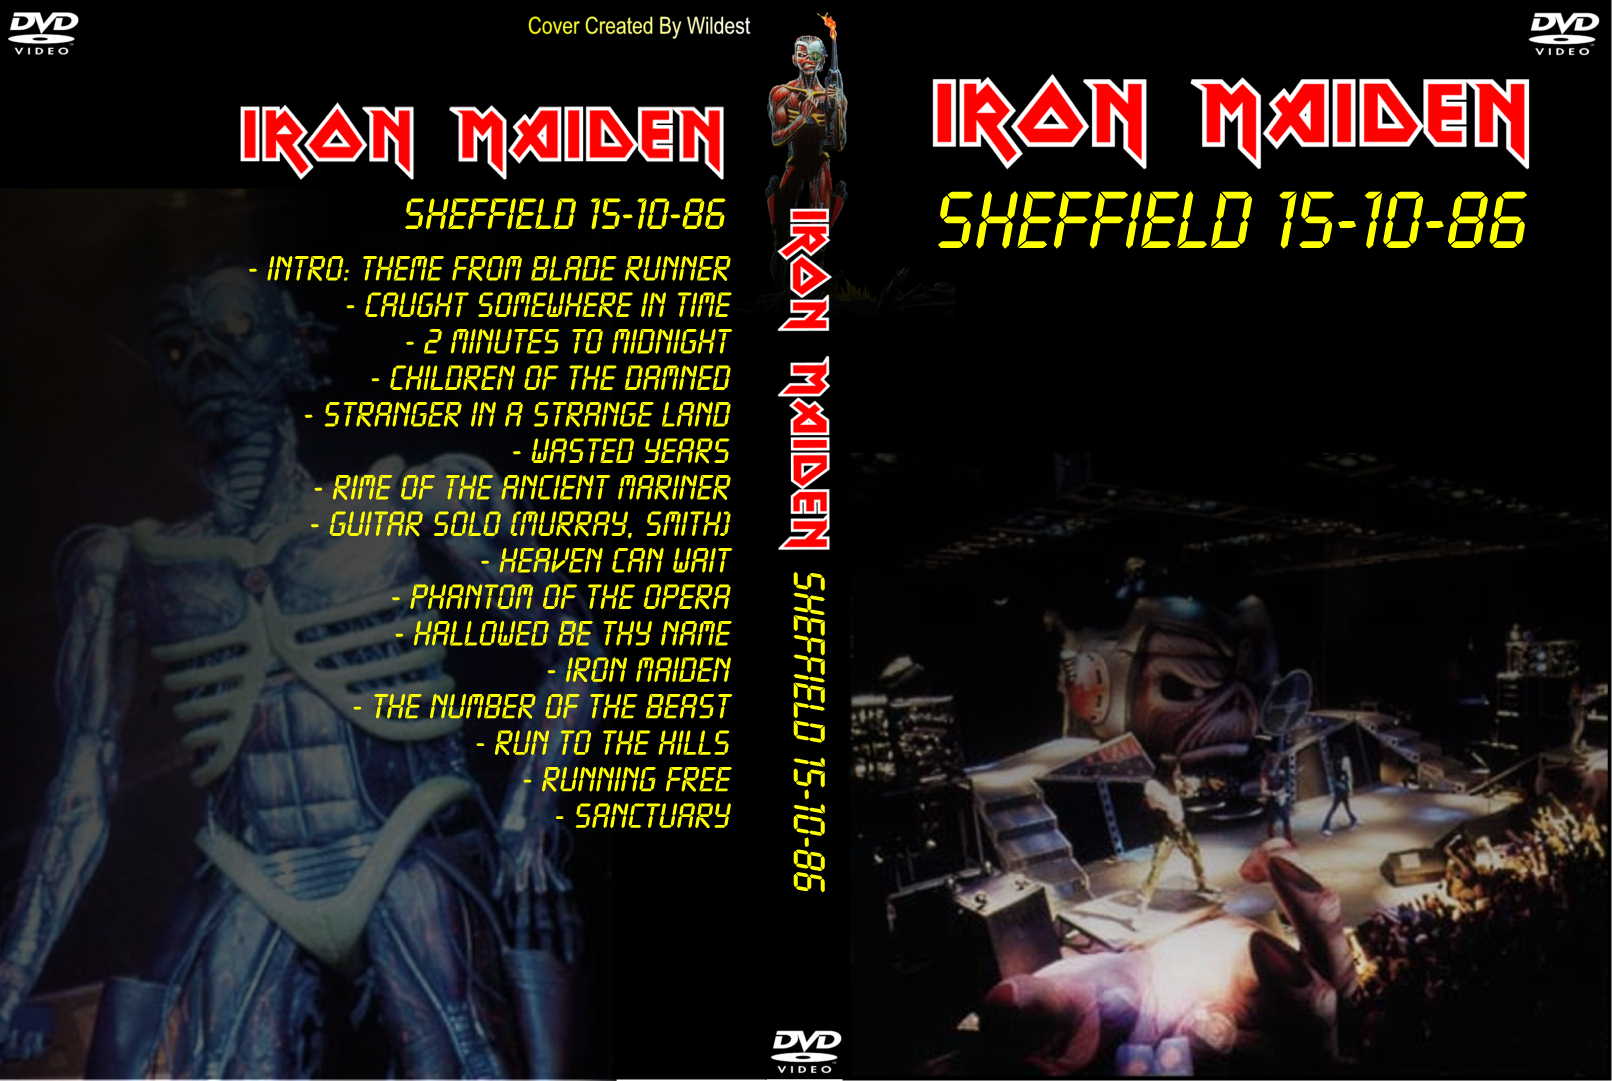 Amazoncom: Maiden England 88: Iron Maiden, Steve Harris